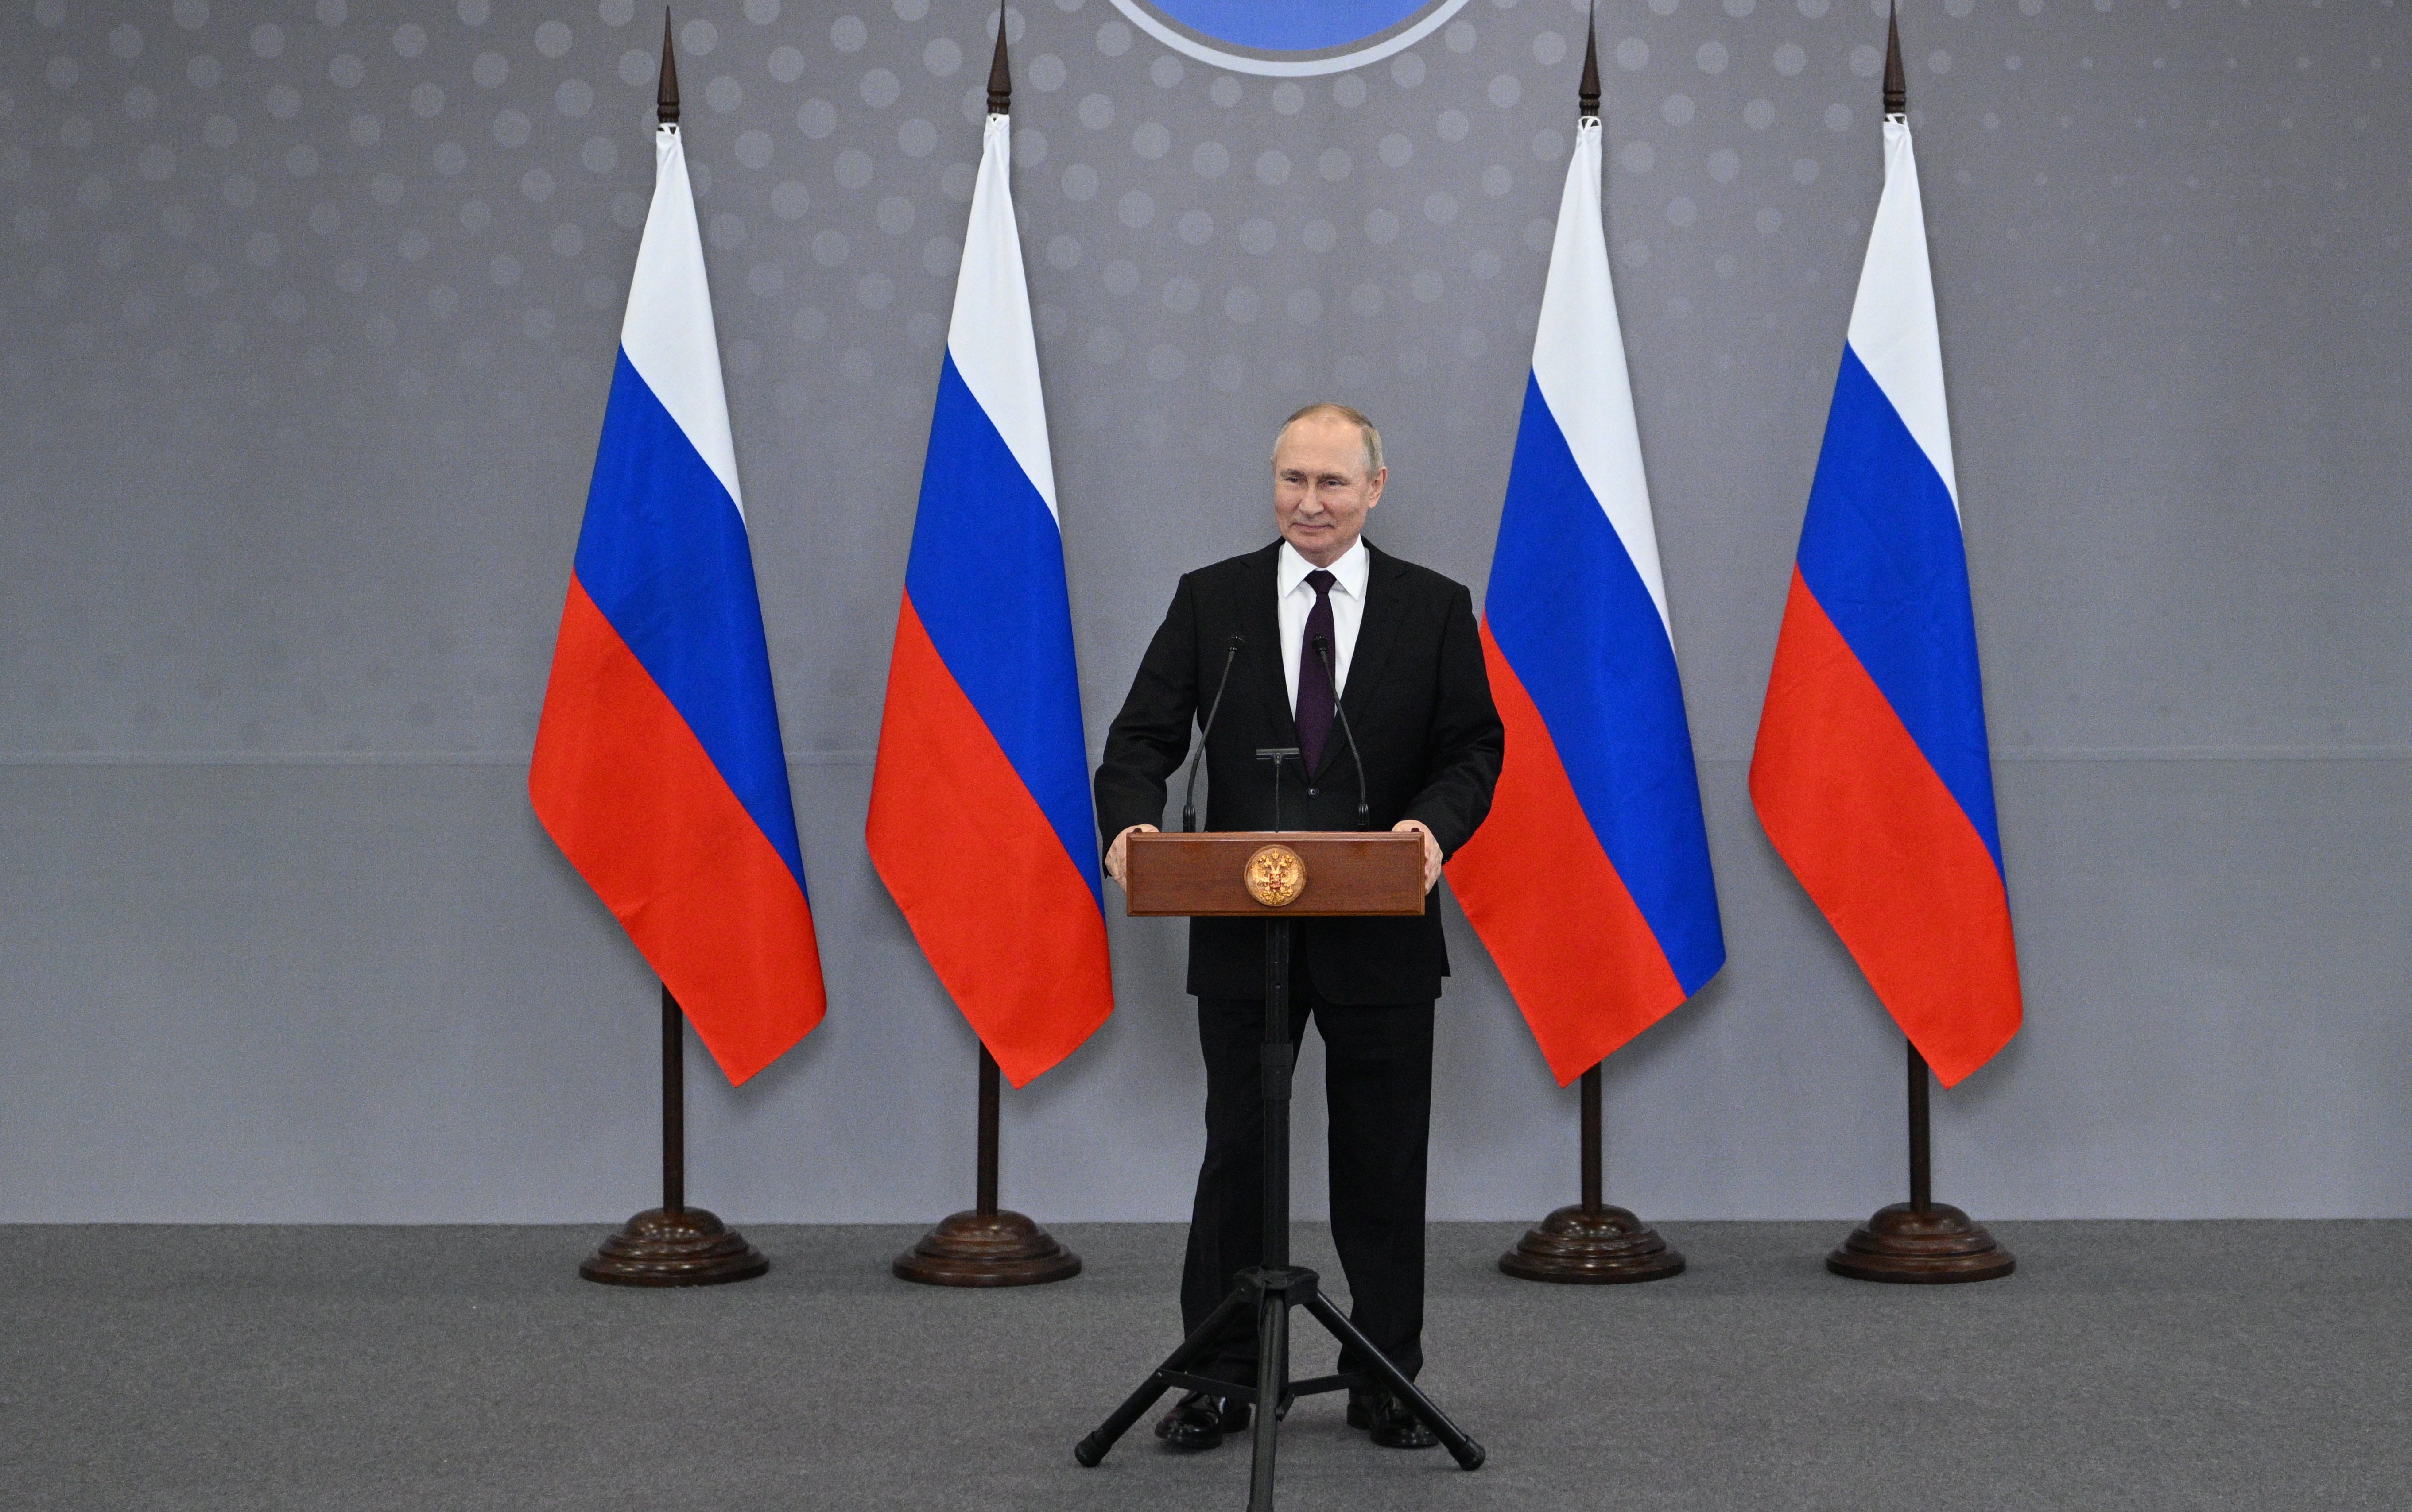 Tensions a l'Àsia Central i Putin assenyala nous culpables (sense escrúpols)